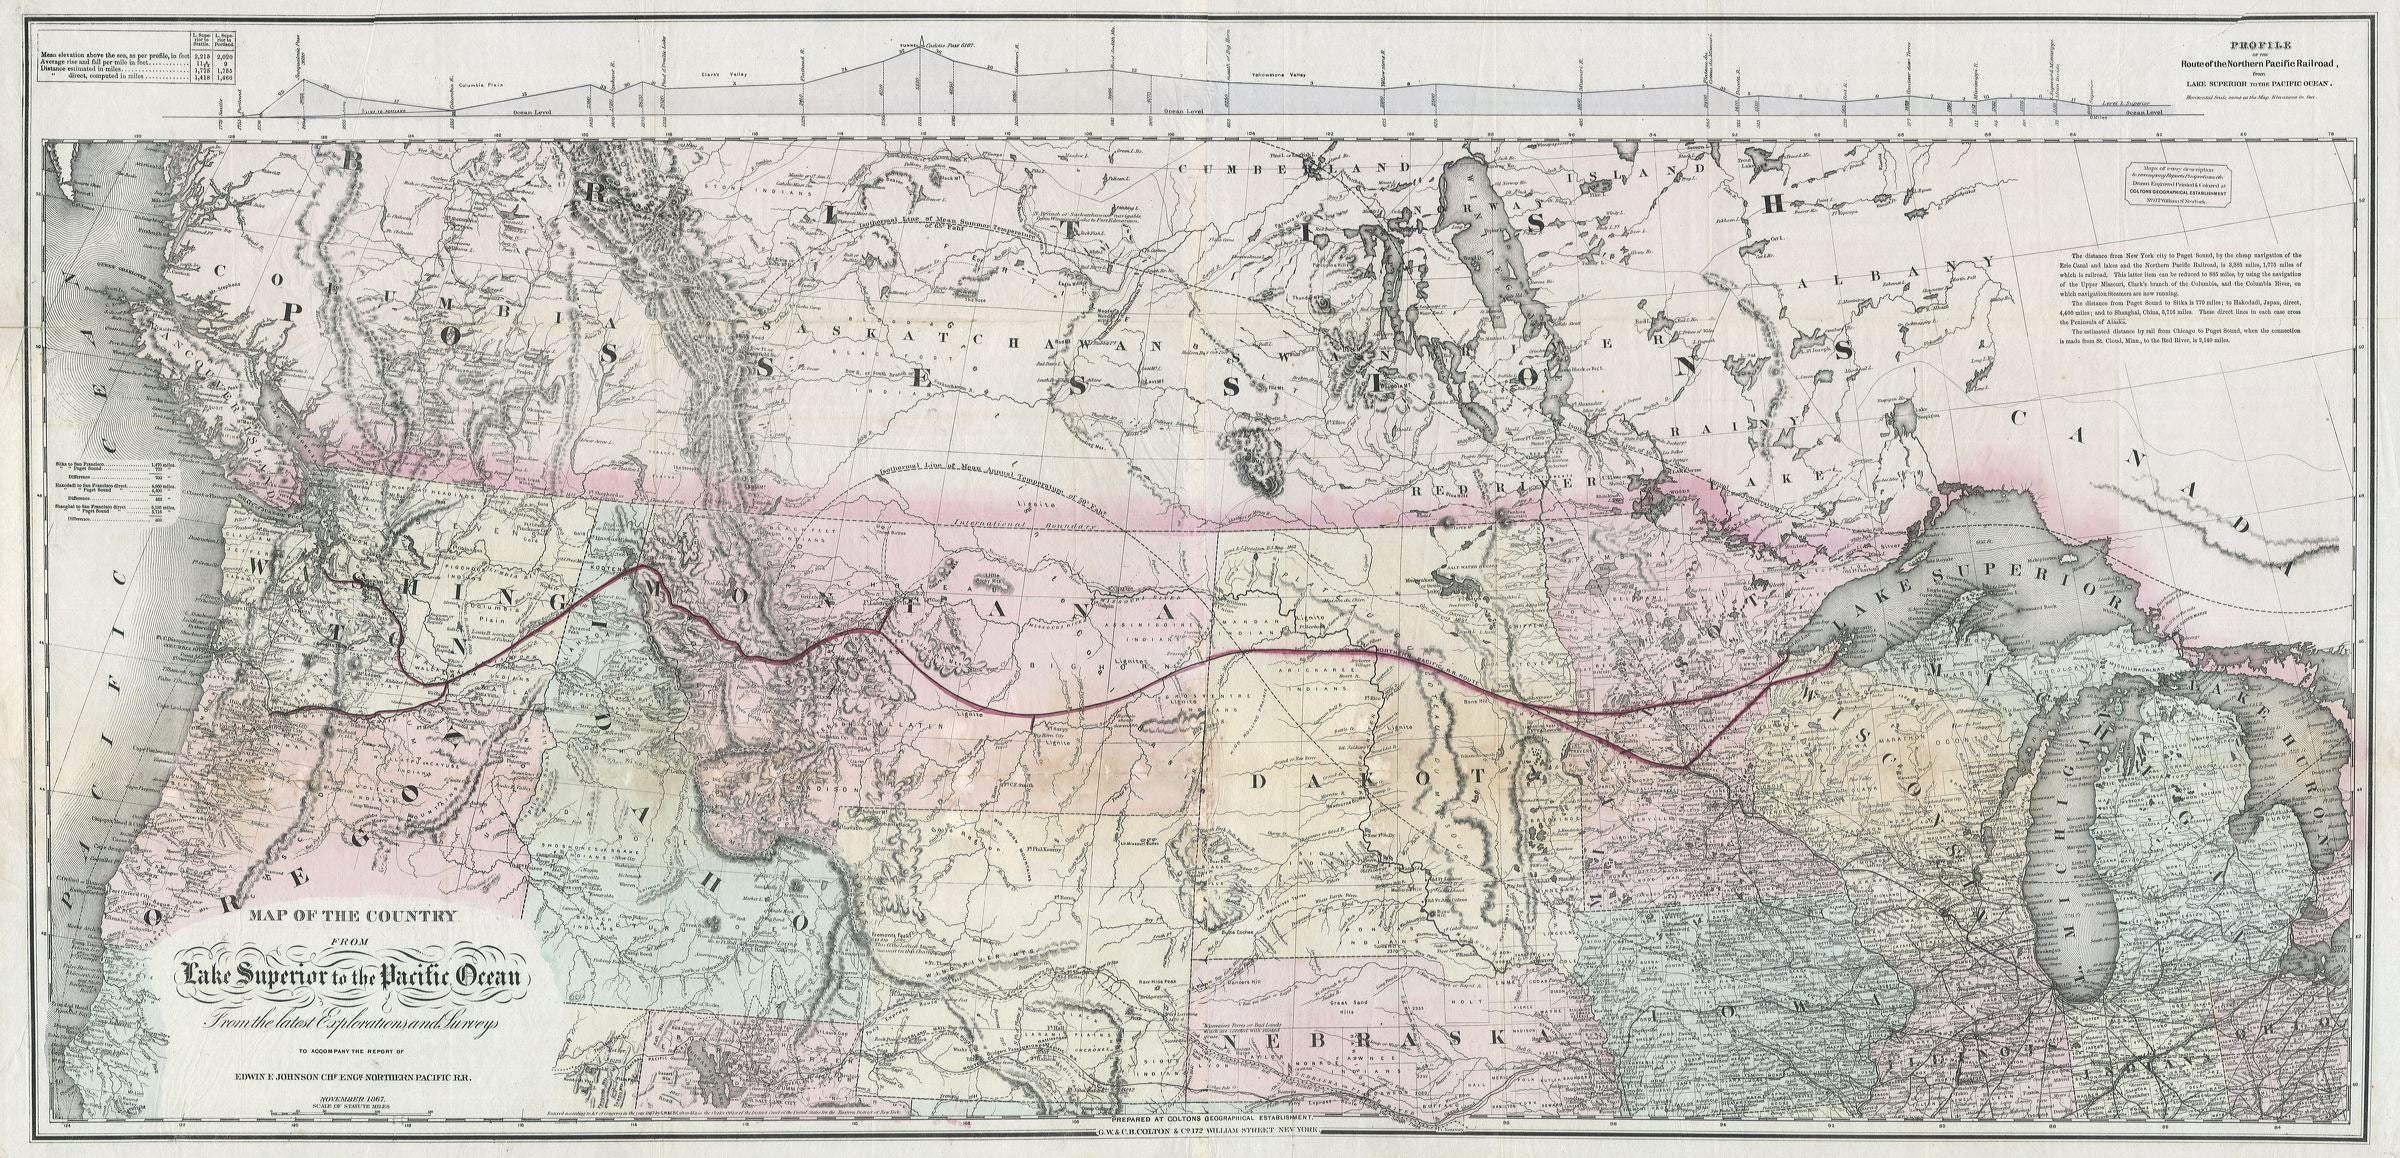 Bahnkarte der U.S.A. im Jahr 1867 von Joseph Hutchins Colton